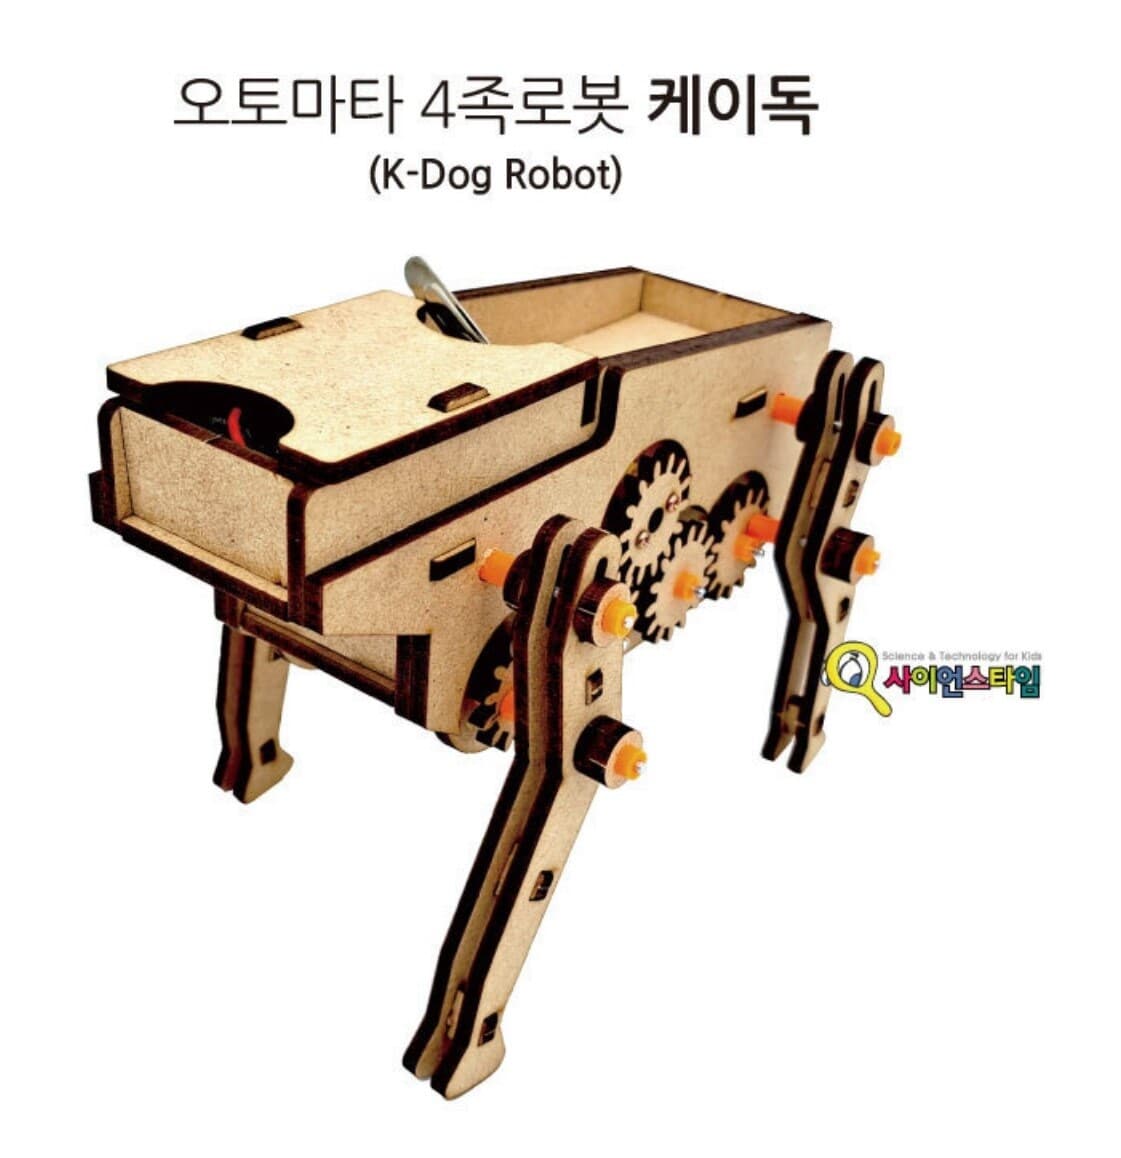 프로 오토마타 4족로봇 케이독(K-Dog) 만들기